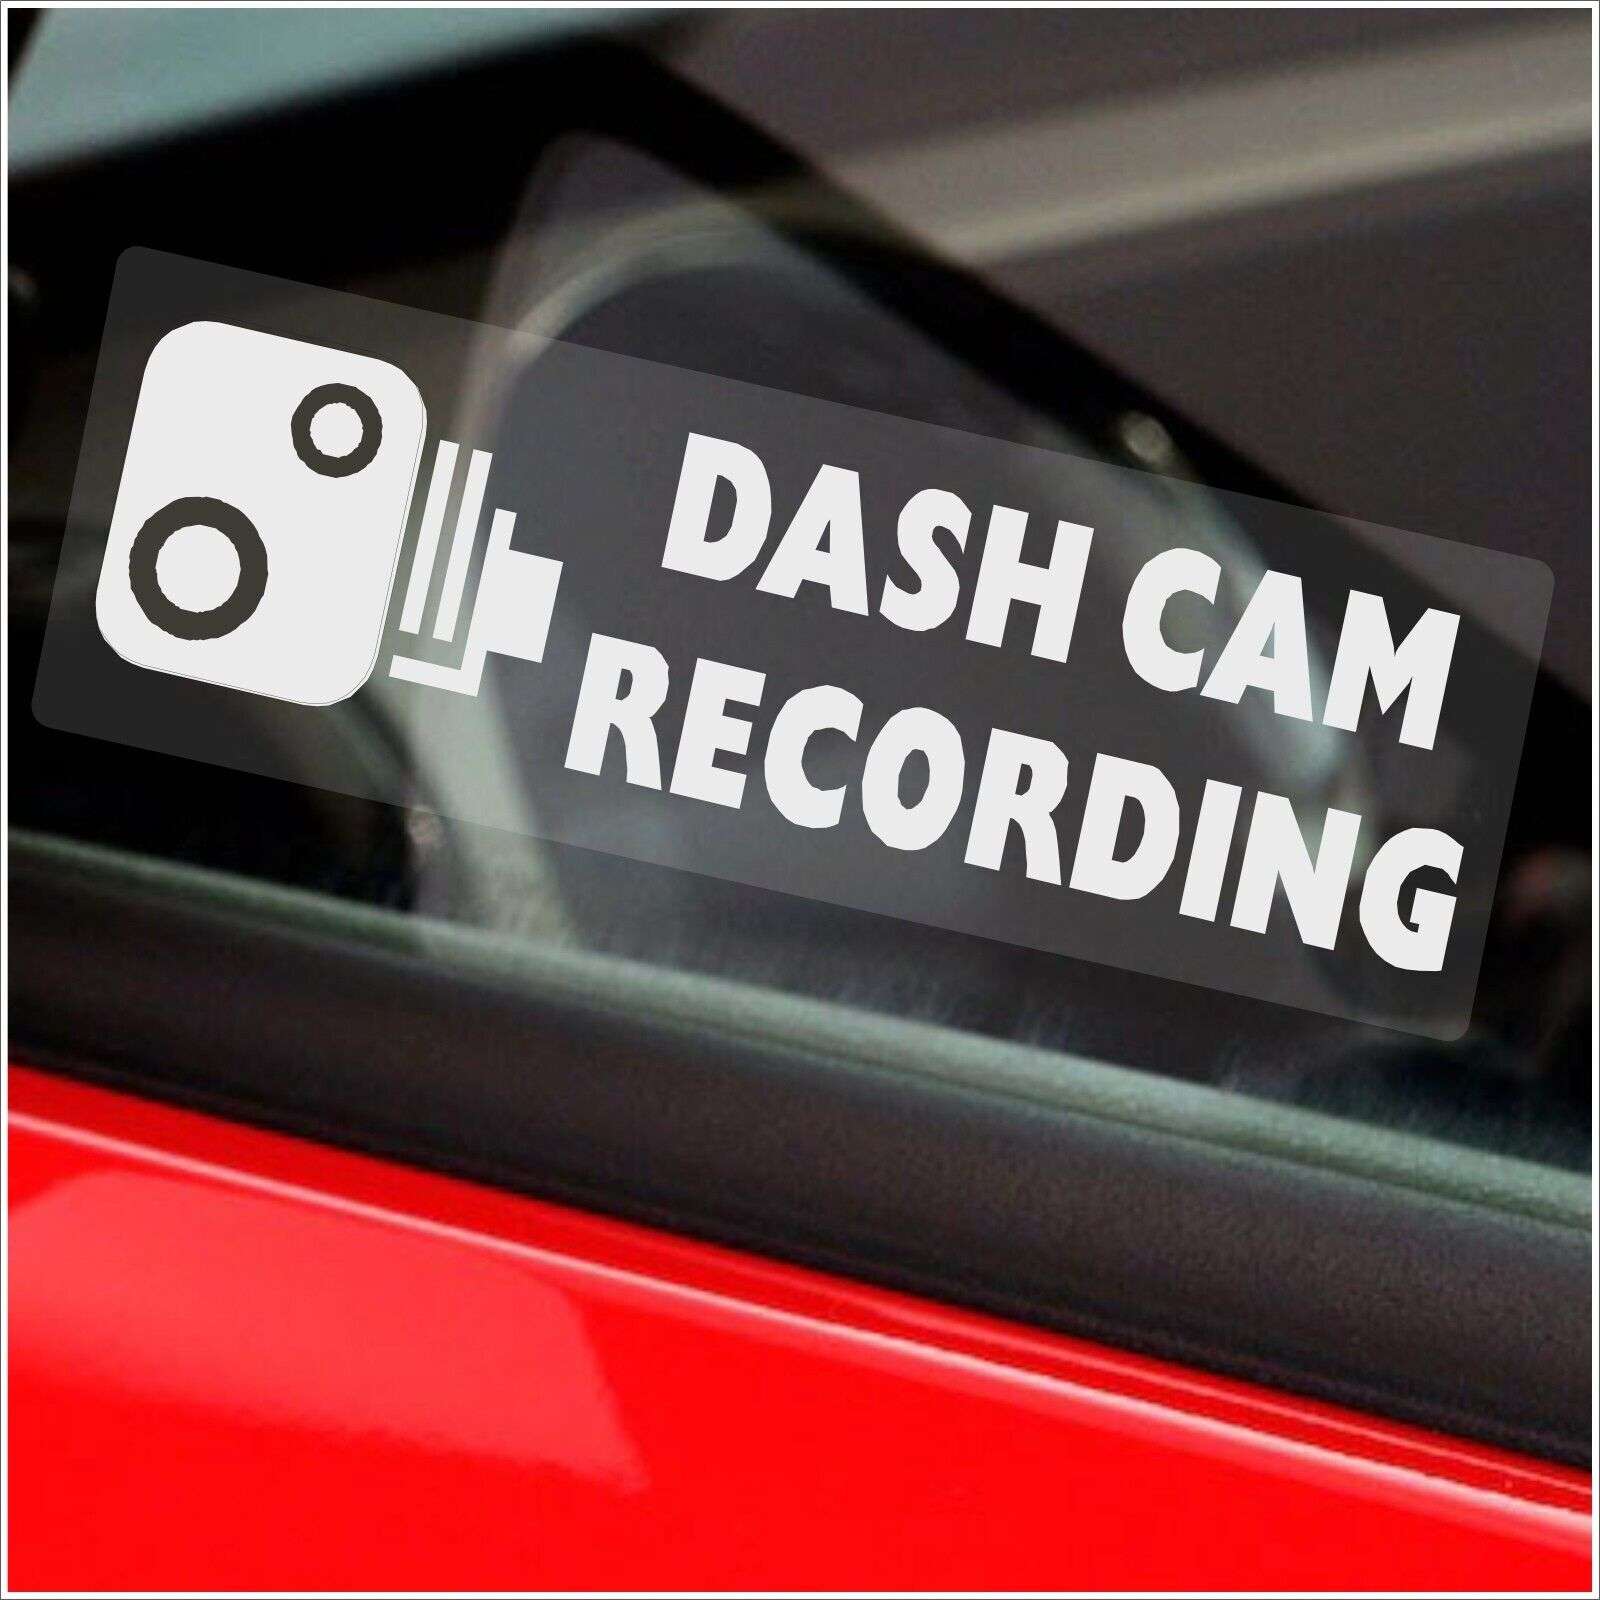 Adesivo per auto registrazione dashcam bianco - 76x25mm - interno del finestrino